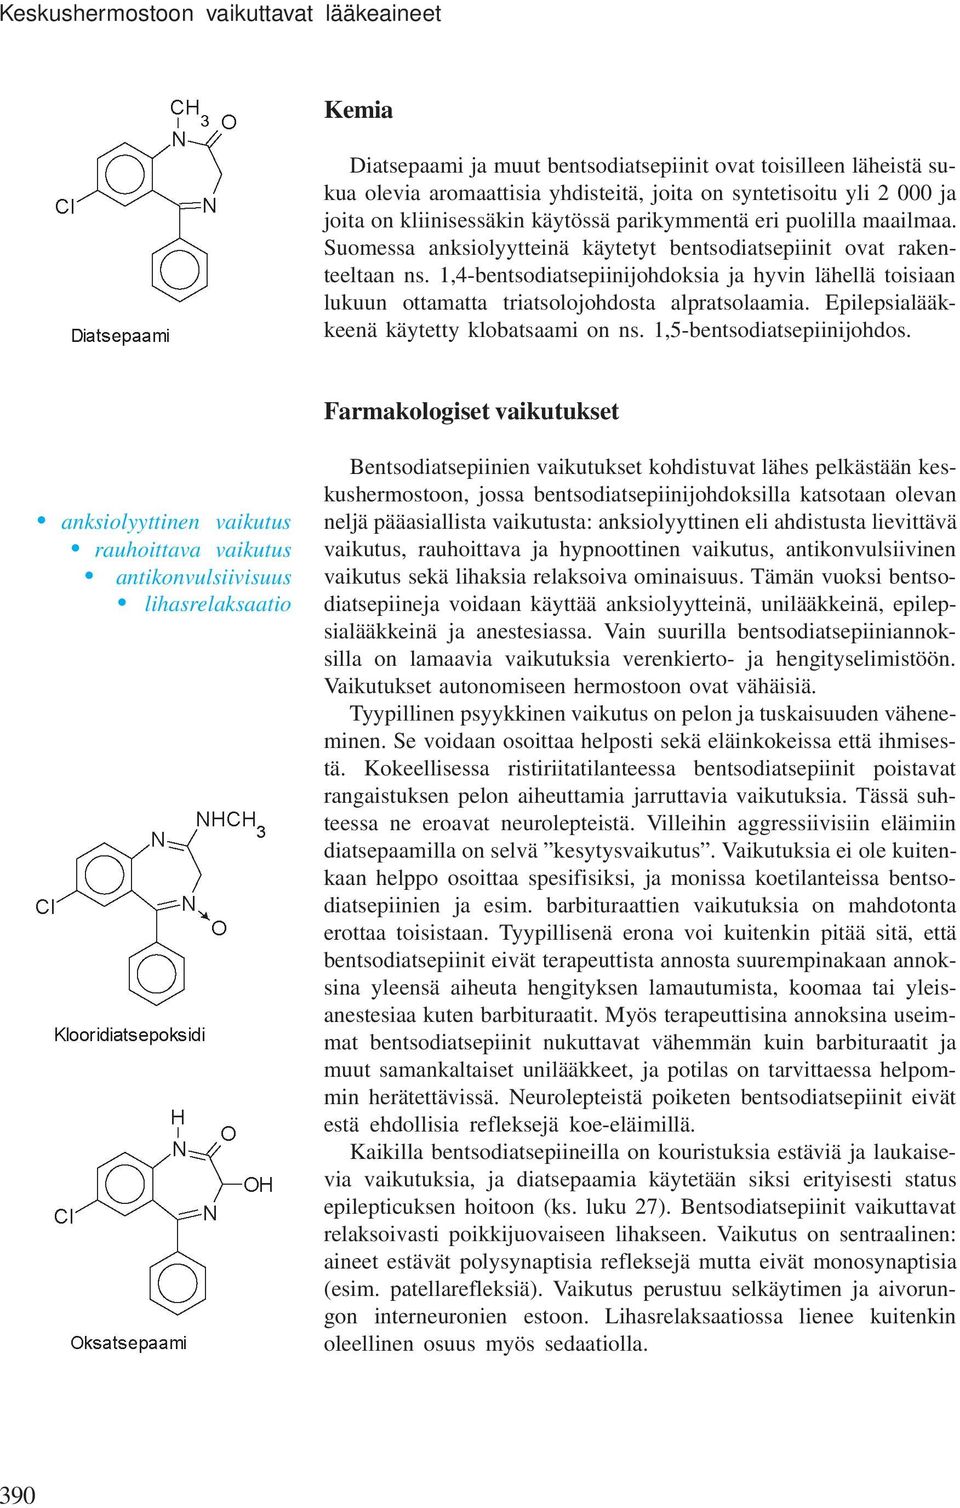 1,4-bentsodiatsepiinijohdoksia ja hyvin lähellä toisiaan lukuun ottamatta triatsolojohdosta alpratsolaamia. Epilepsialääkkeenä käytetty klobatsaami on ns. 1,5-bentsodiatsepiinijohdos.